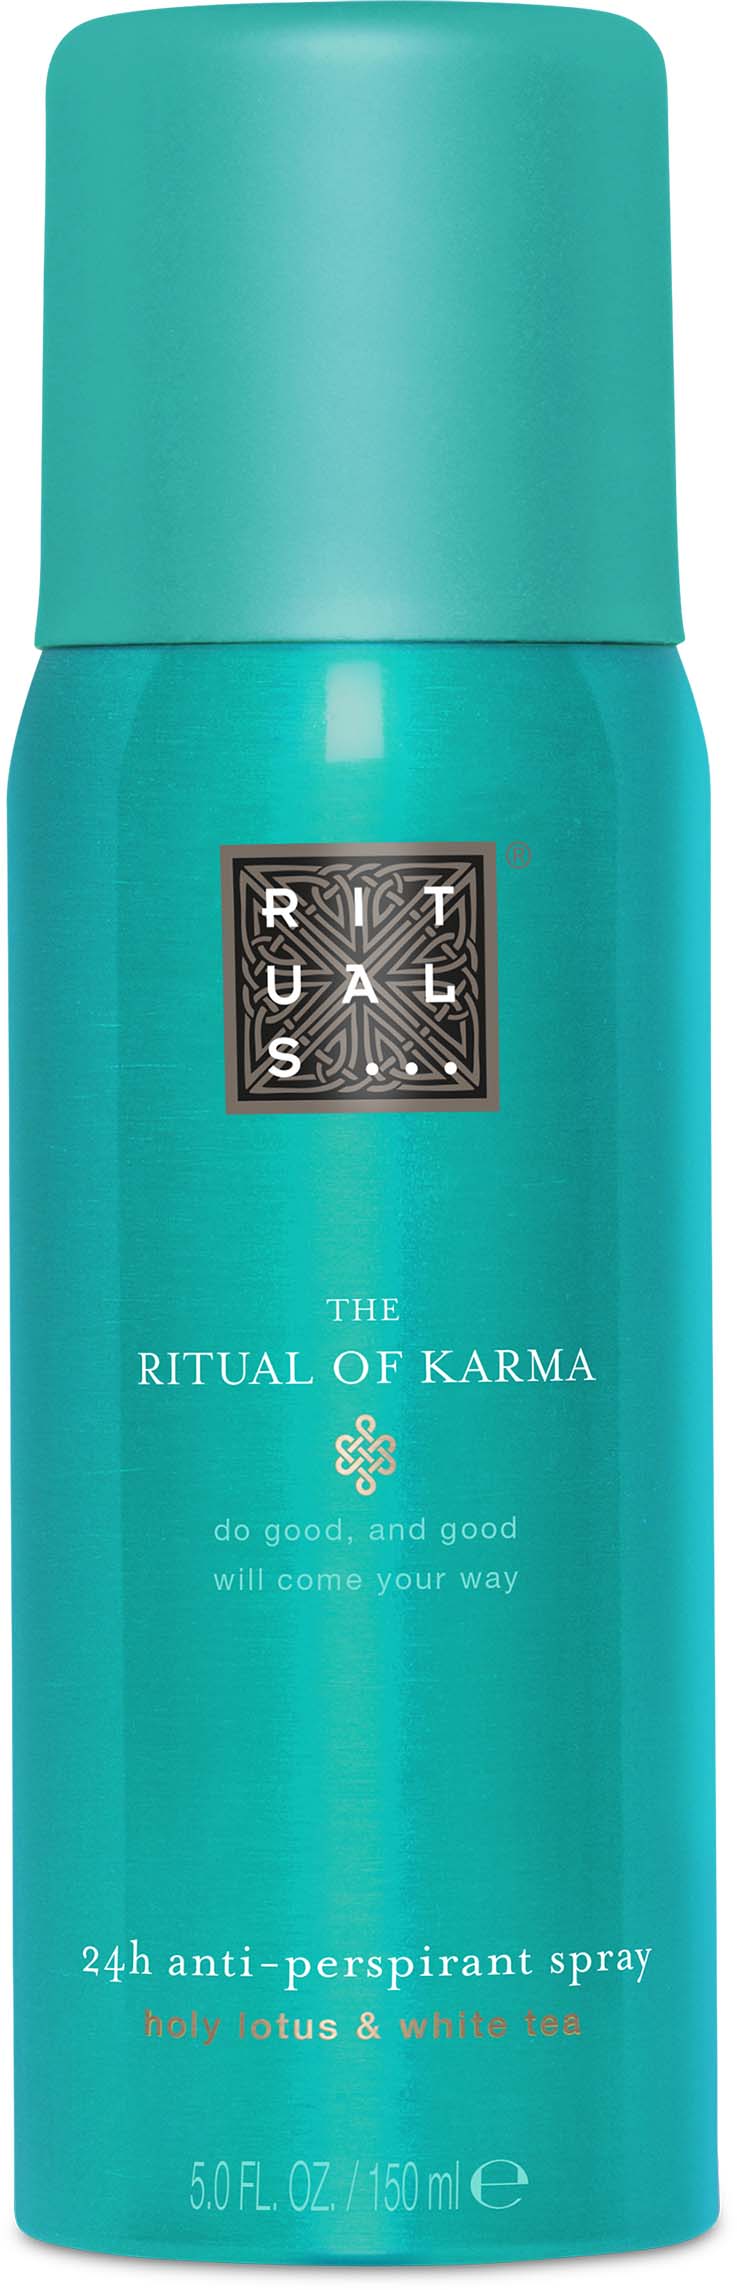 Rituals The Ritual of Karma Anti-Perspirant Spray 24H 150 ml